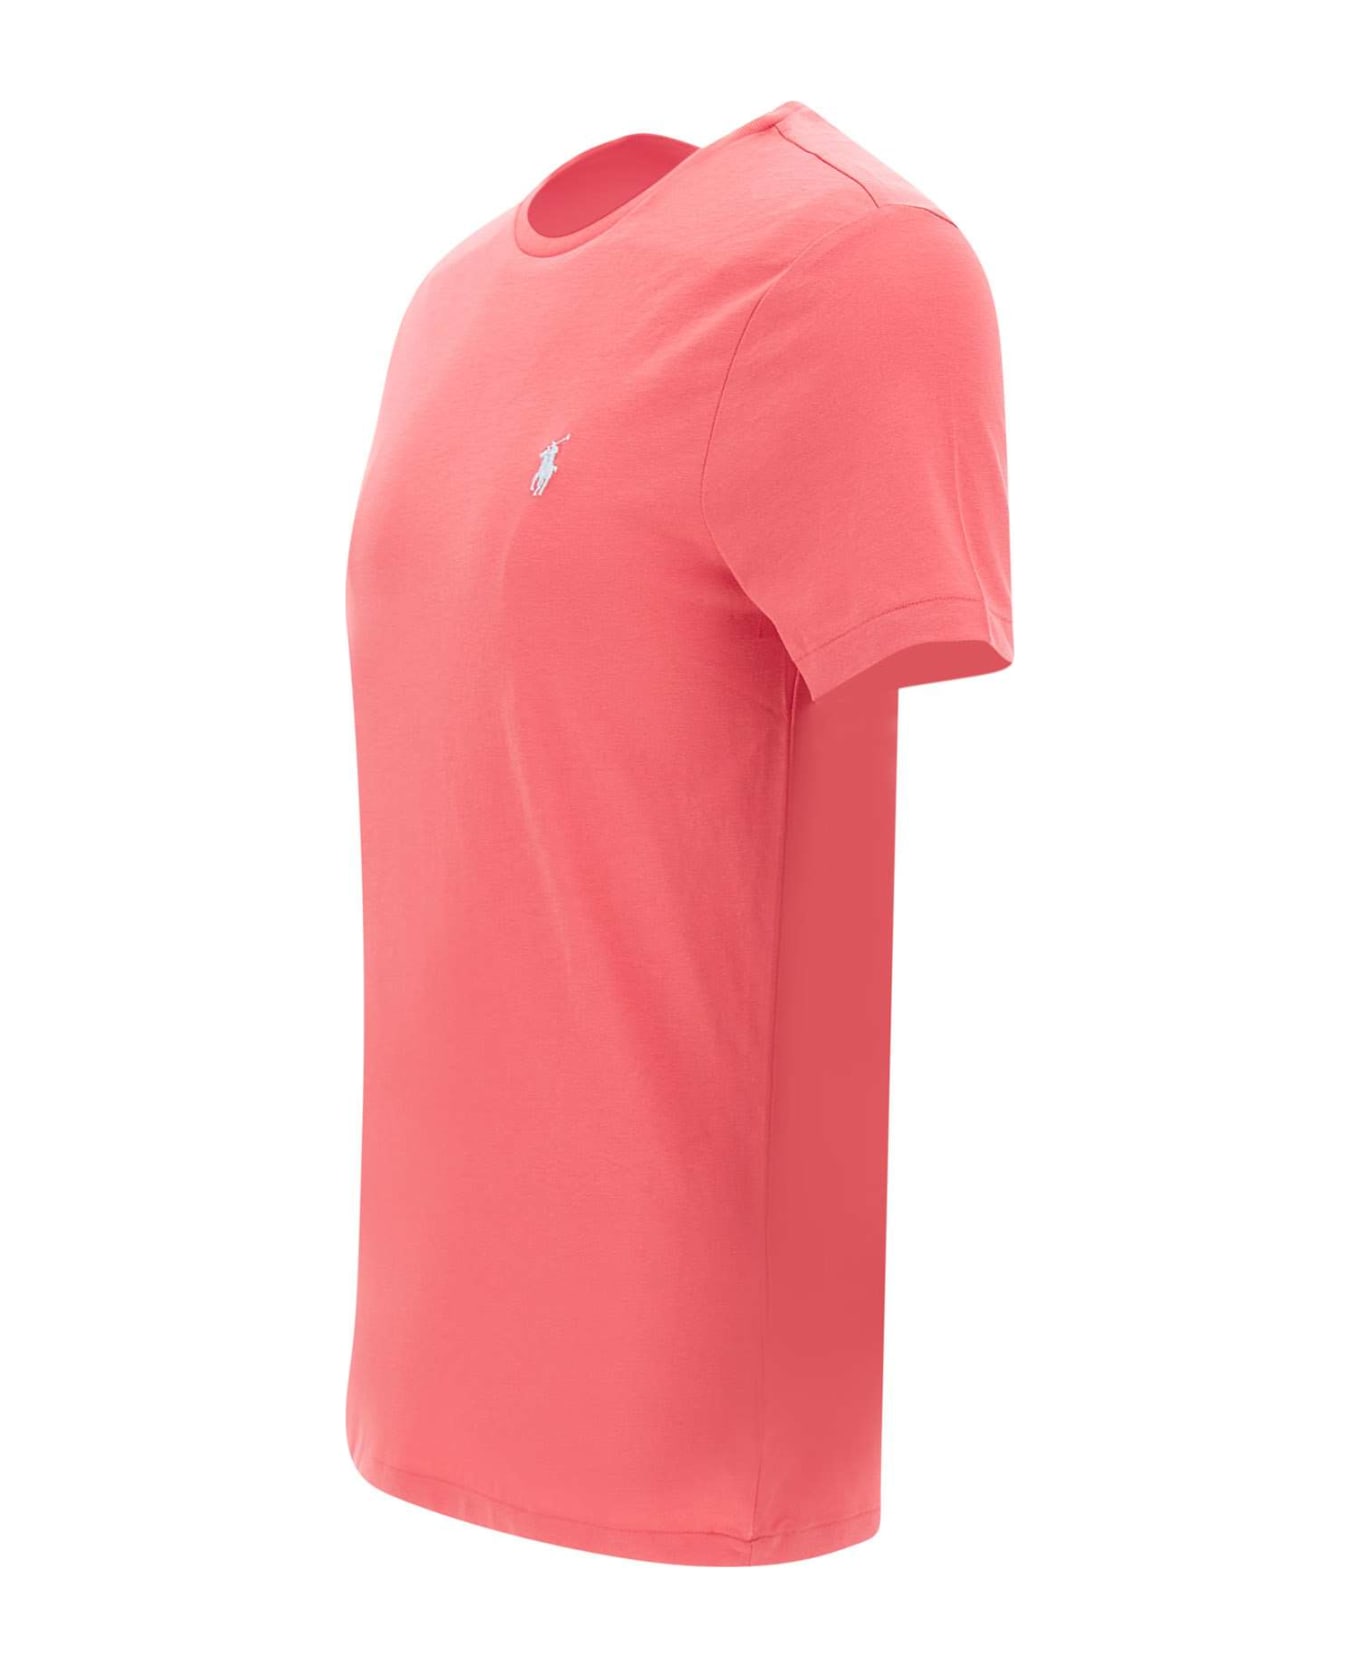 Polo Ralph Lauren "classics" Cotton T-shirt - RED